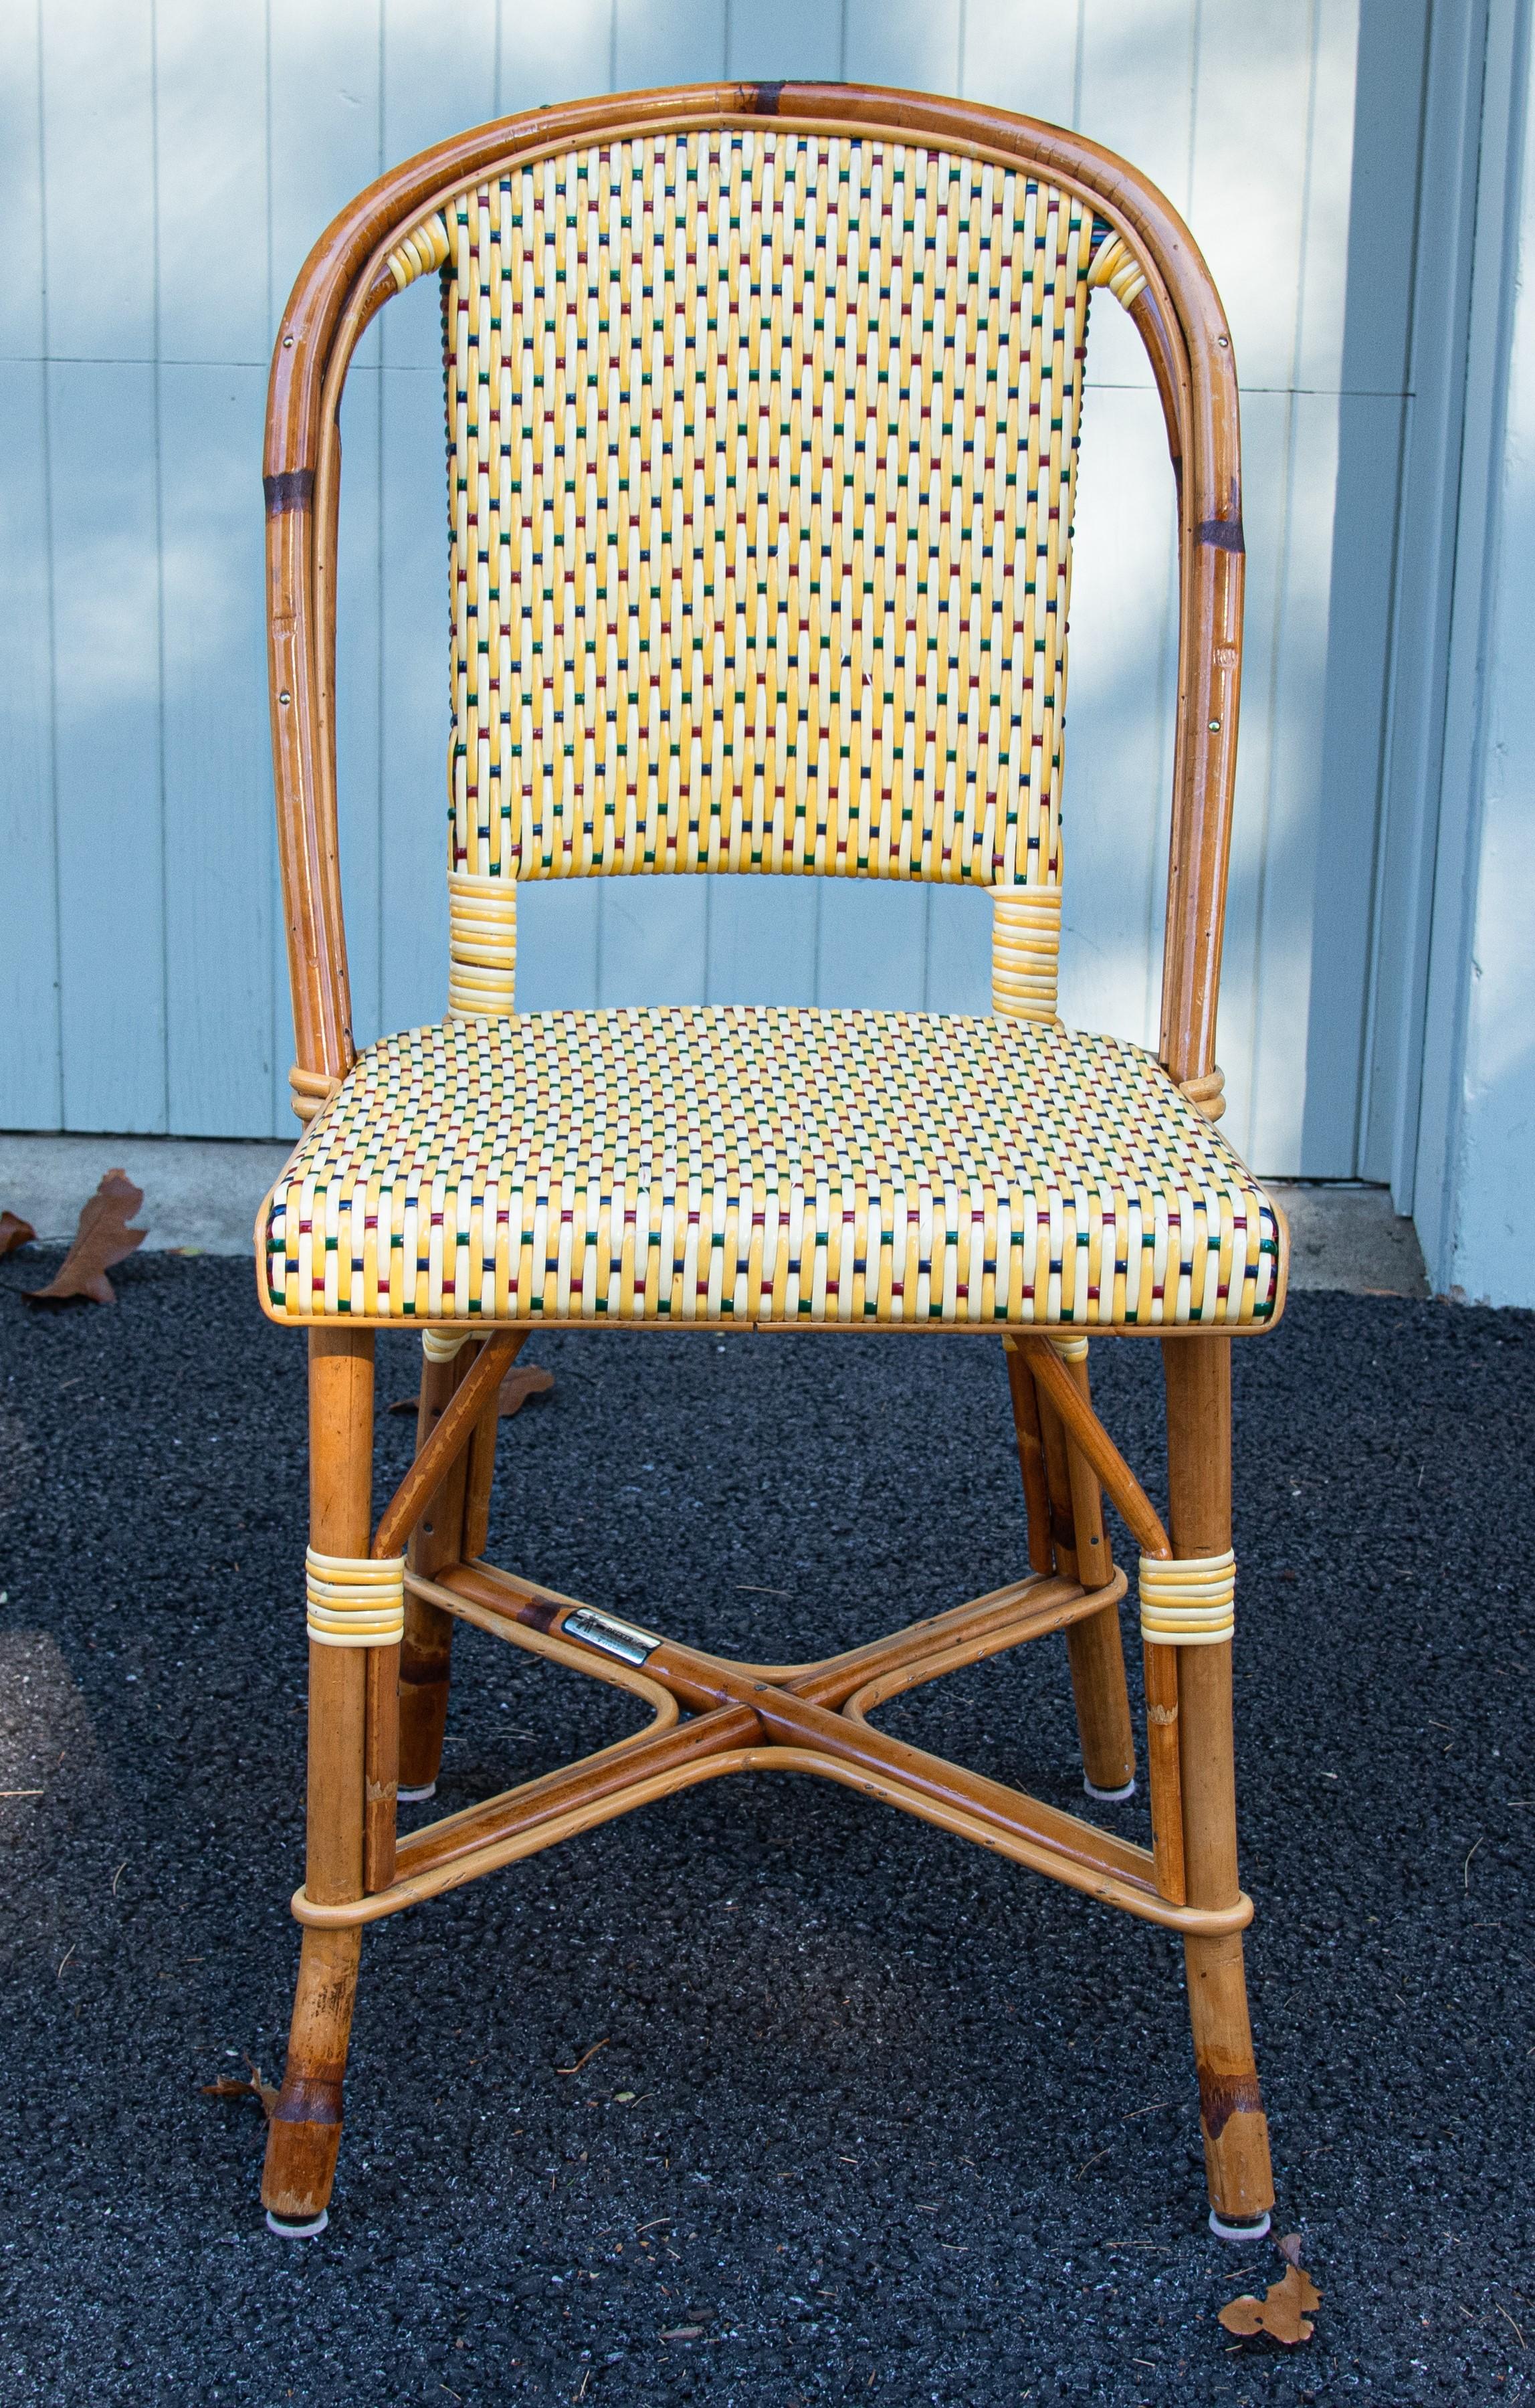 Ce sont les classiques chaises de bistrot parisiennes. Leur cadre en rotin est fabriqué selon une technique ancestrale perfectionnée par les Français:: plié et façonné à la main jusqu'à ce que la forme emblématique soit obtenue et que les variations